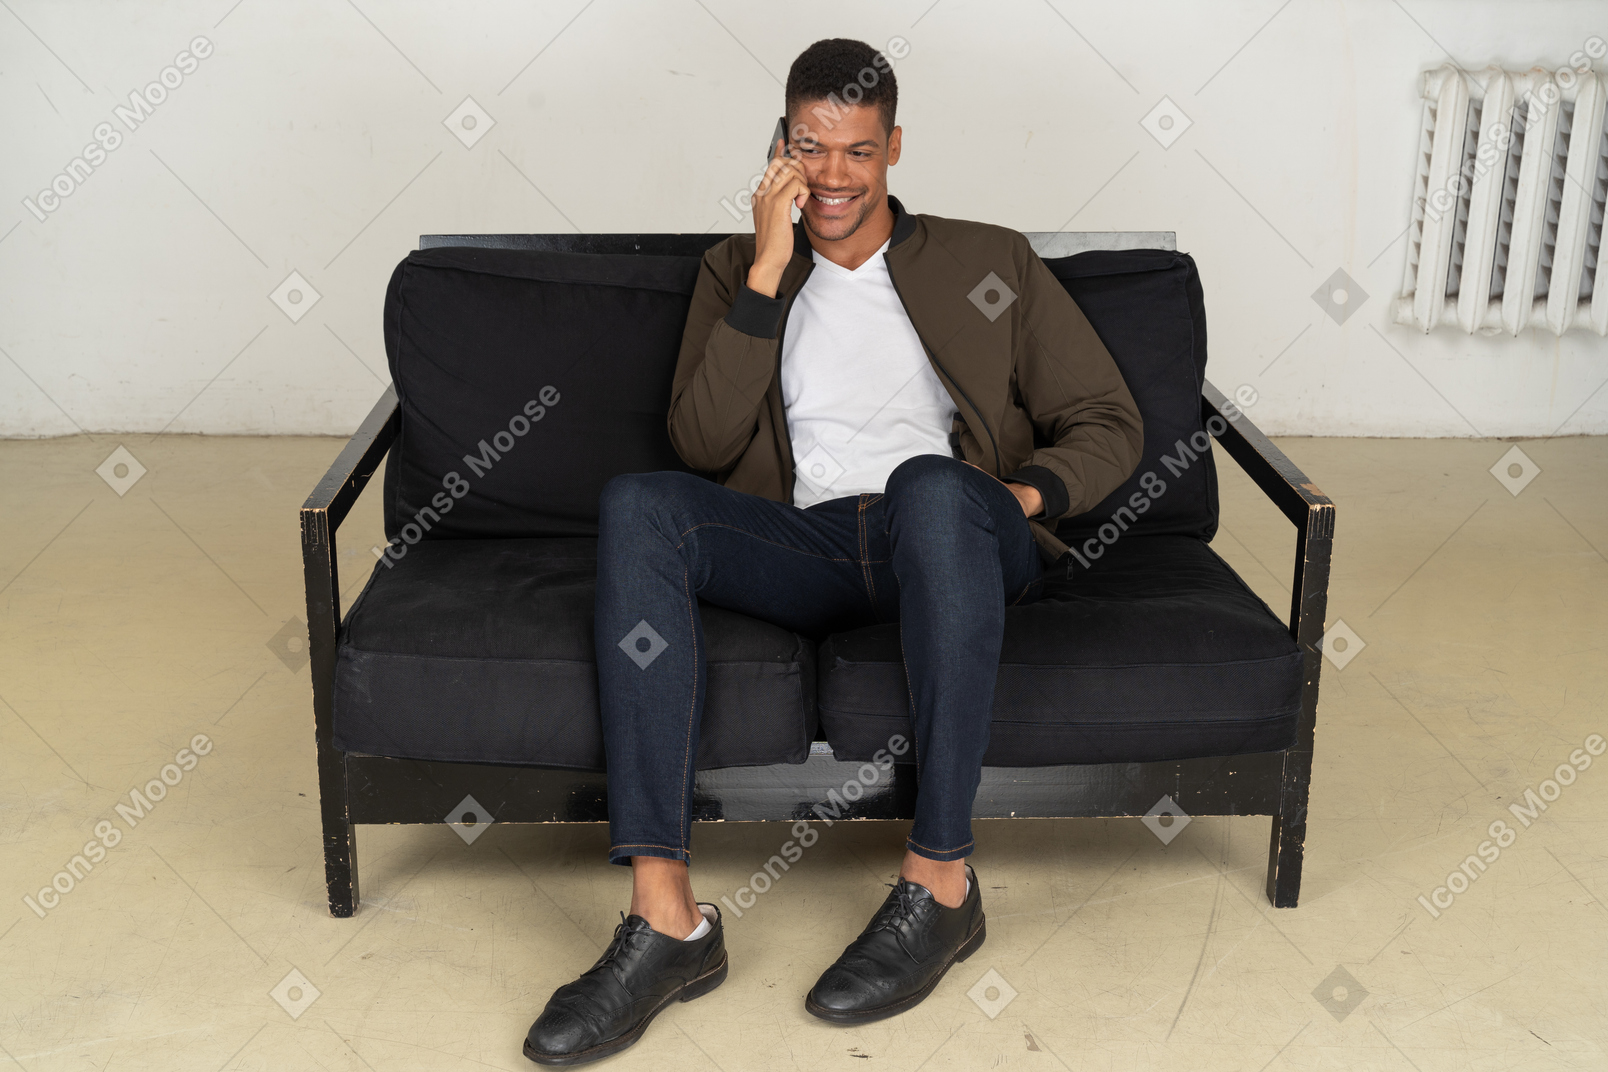 Vorderansicht eines lächelnden jungen mannes, der auf einem sofa sitzt und mit seinem telefon spricht